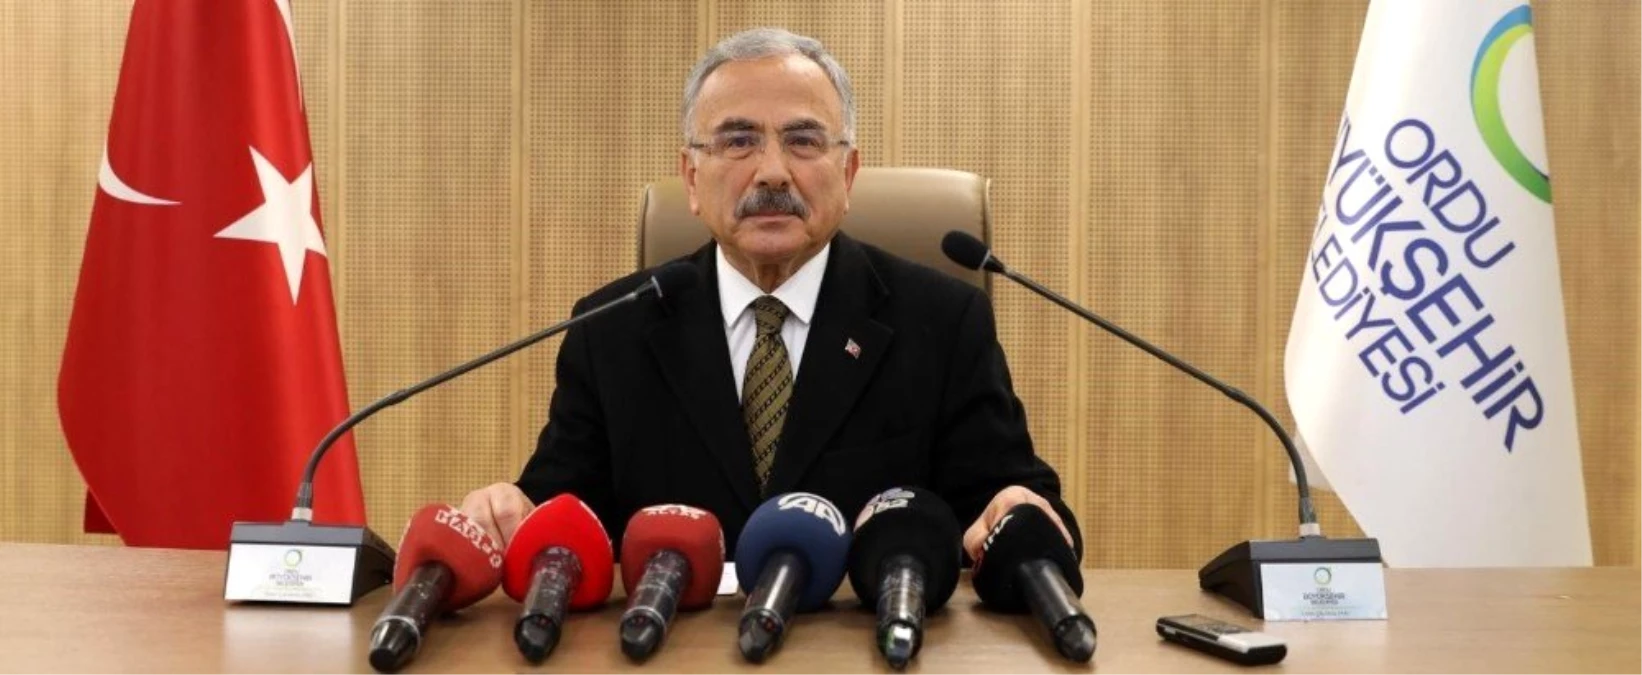 Başkan Güler: "Biz de yanlışa yer yok, kararlılığımız sürecek"